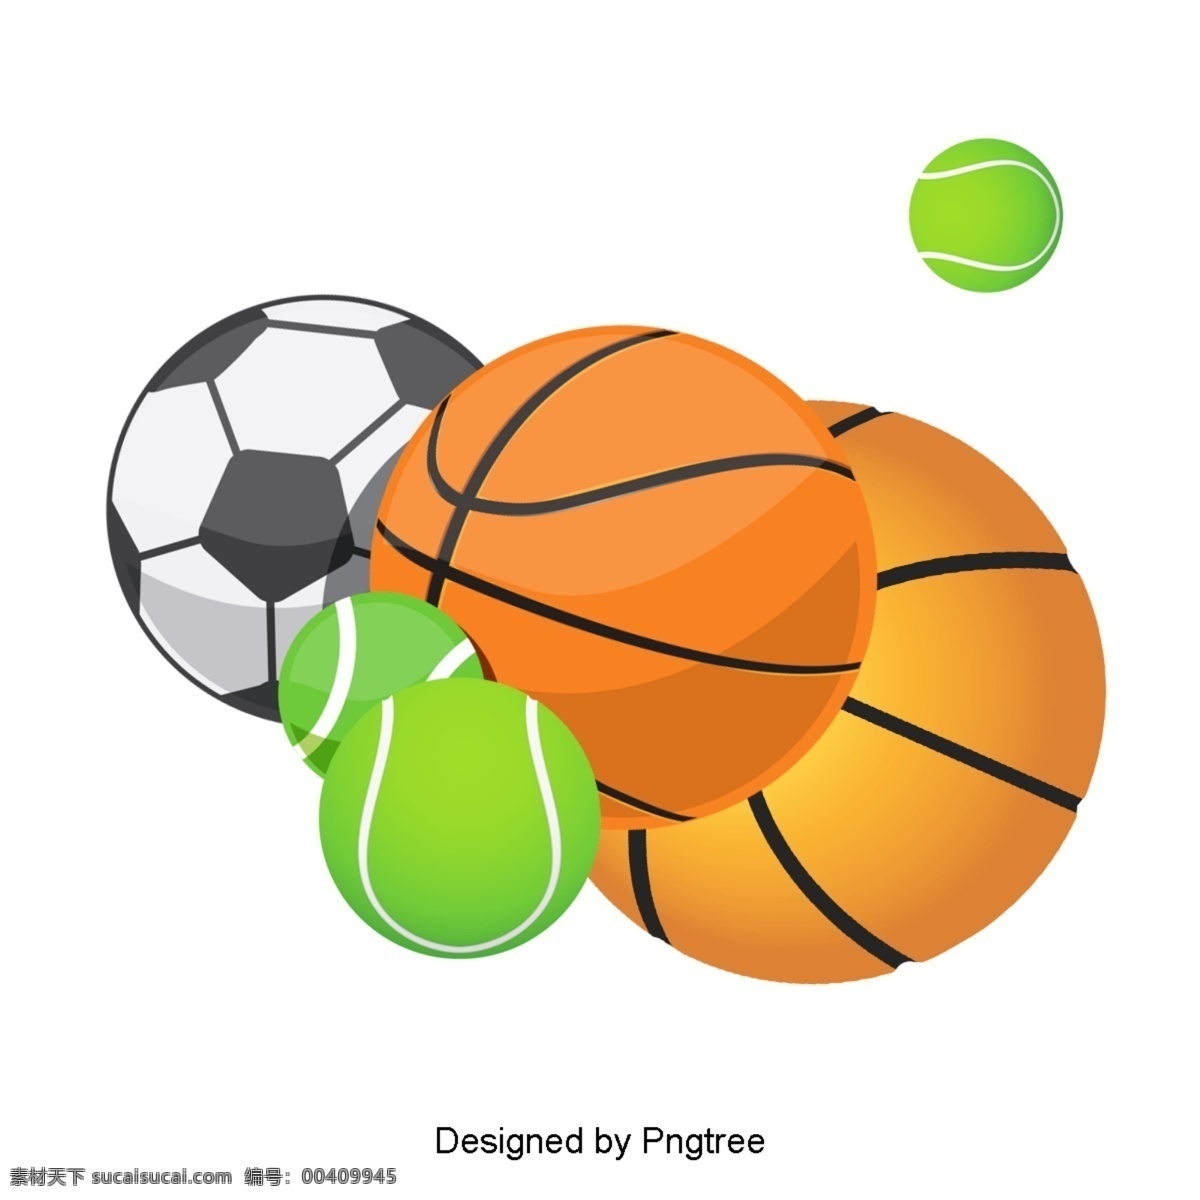 卡通 运动 健身器材 球类运动 篮球 橄榄球 足球 健身 设备 工具 健康